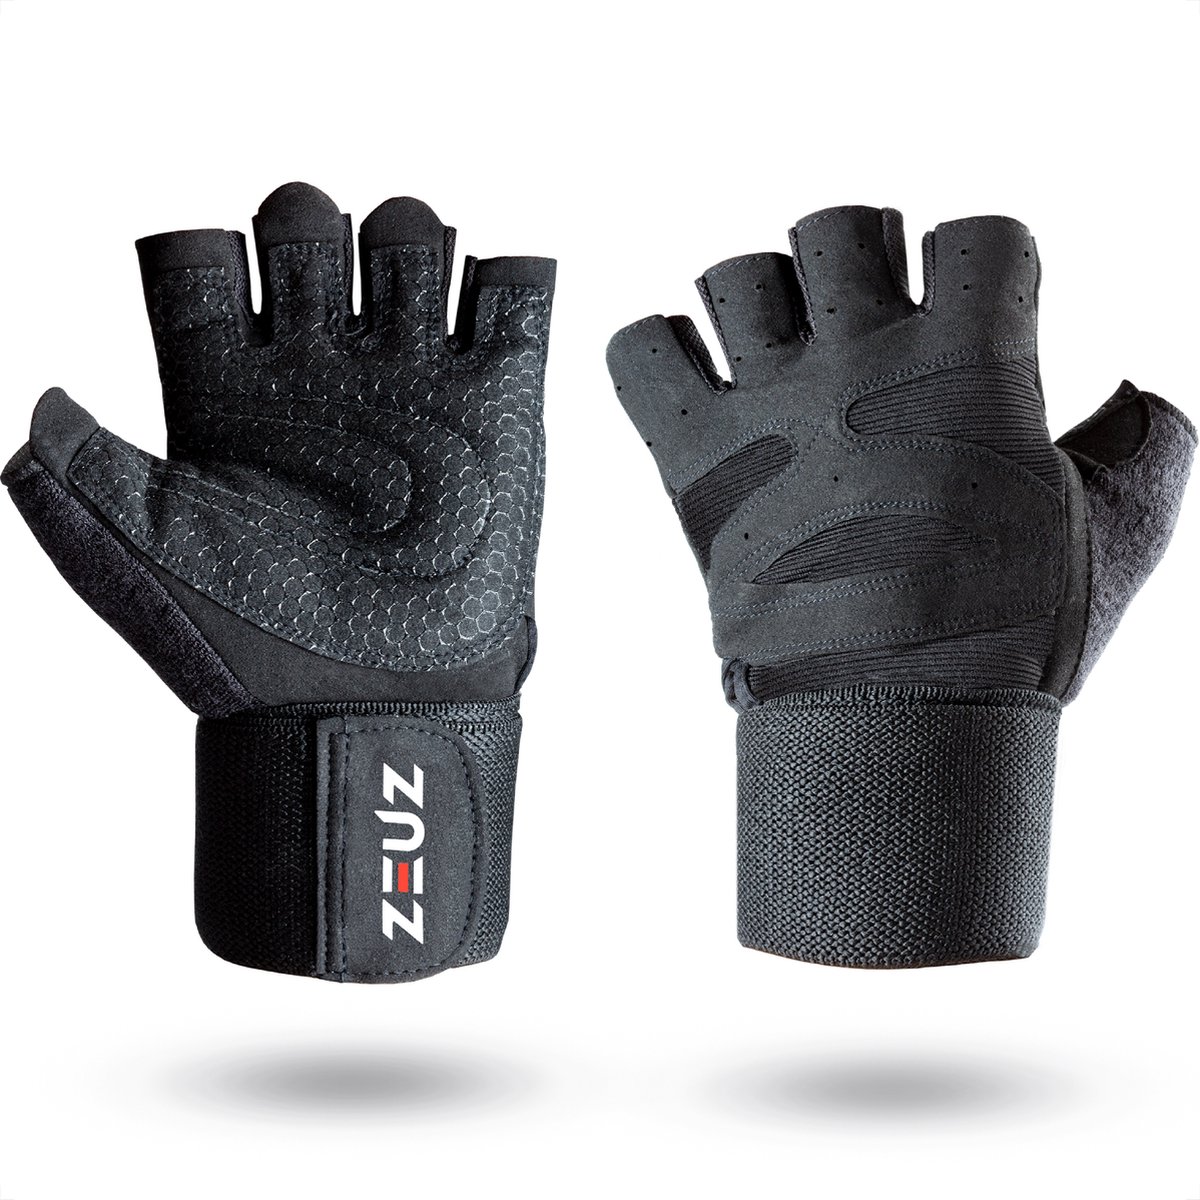 ZEUZ Sport & Fitness Handschoenen Heren & Dames – Krachttraining Artikelen – Geschikt voor Gym & CrossFit Training – Zwart – Maat L - ZEUZ